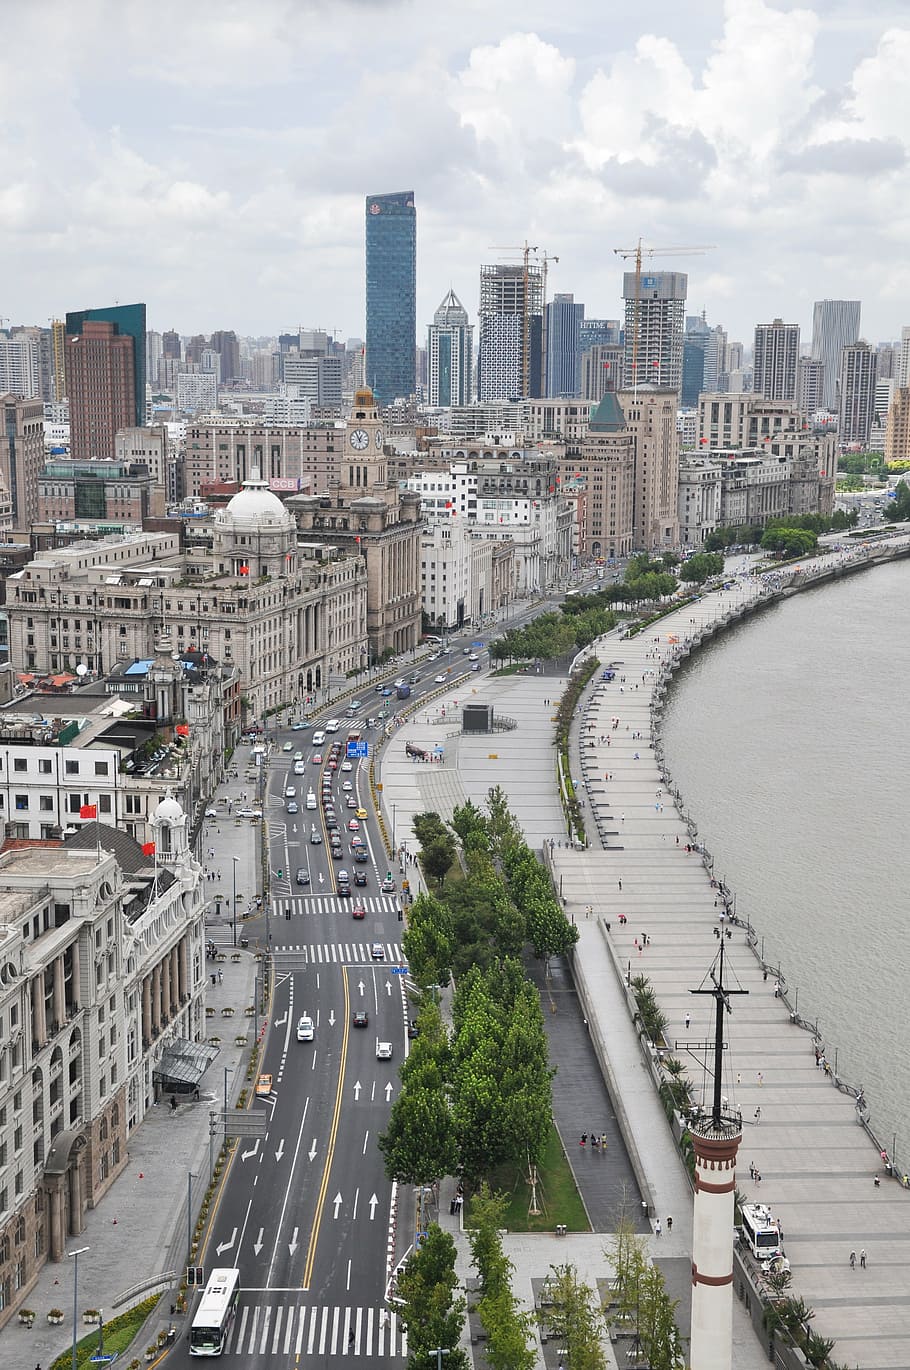 shanghai, langit, bangunan, jalan, bund, pemandangan, gedung-gedung tinggi, sungai huangpu, cityscape, Scene urban